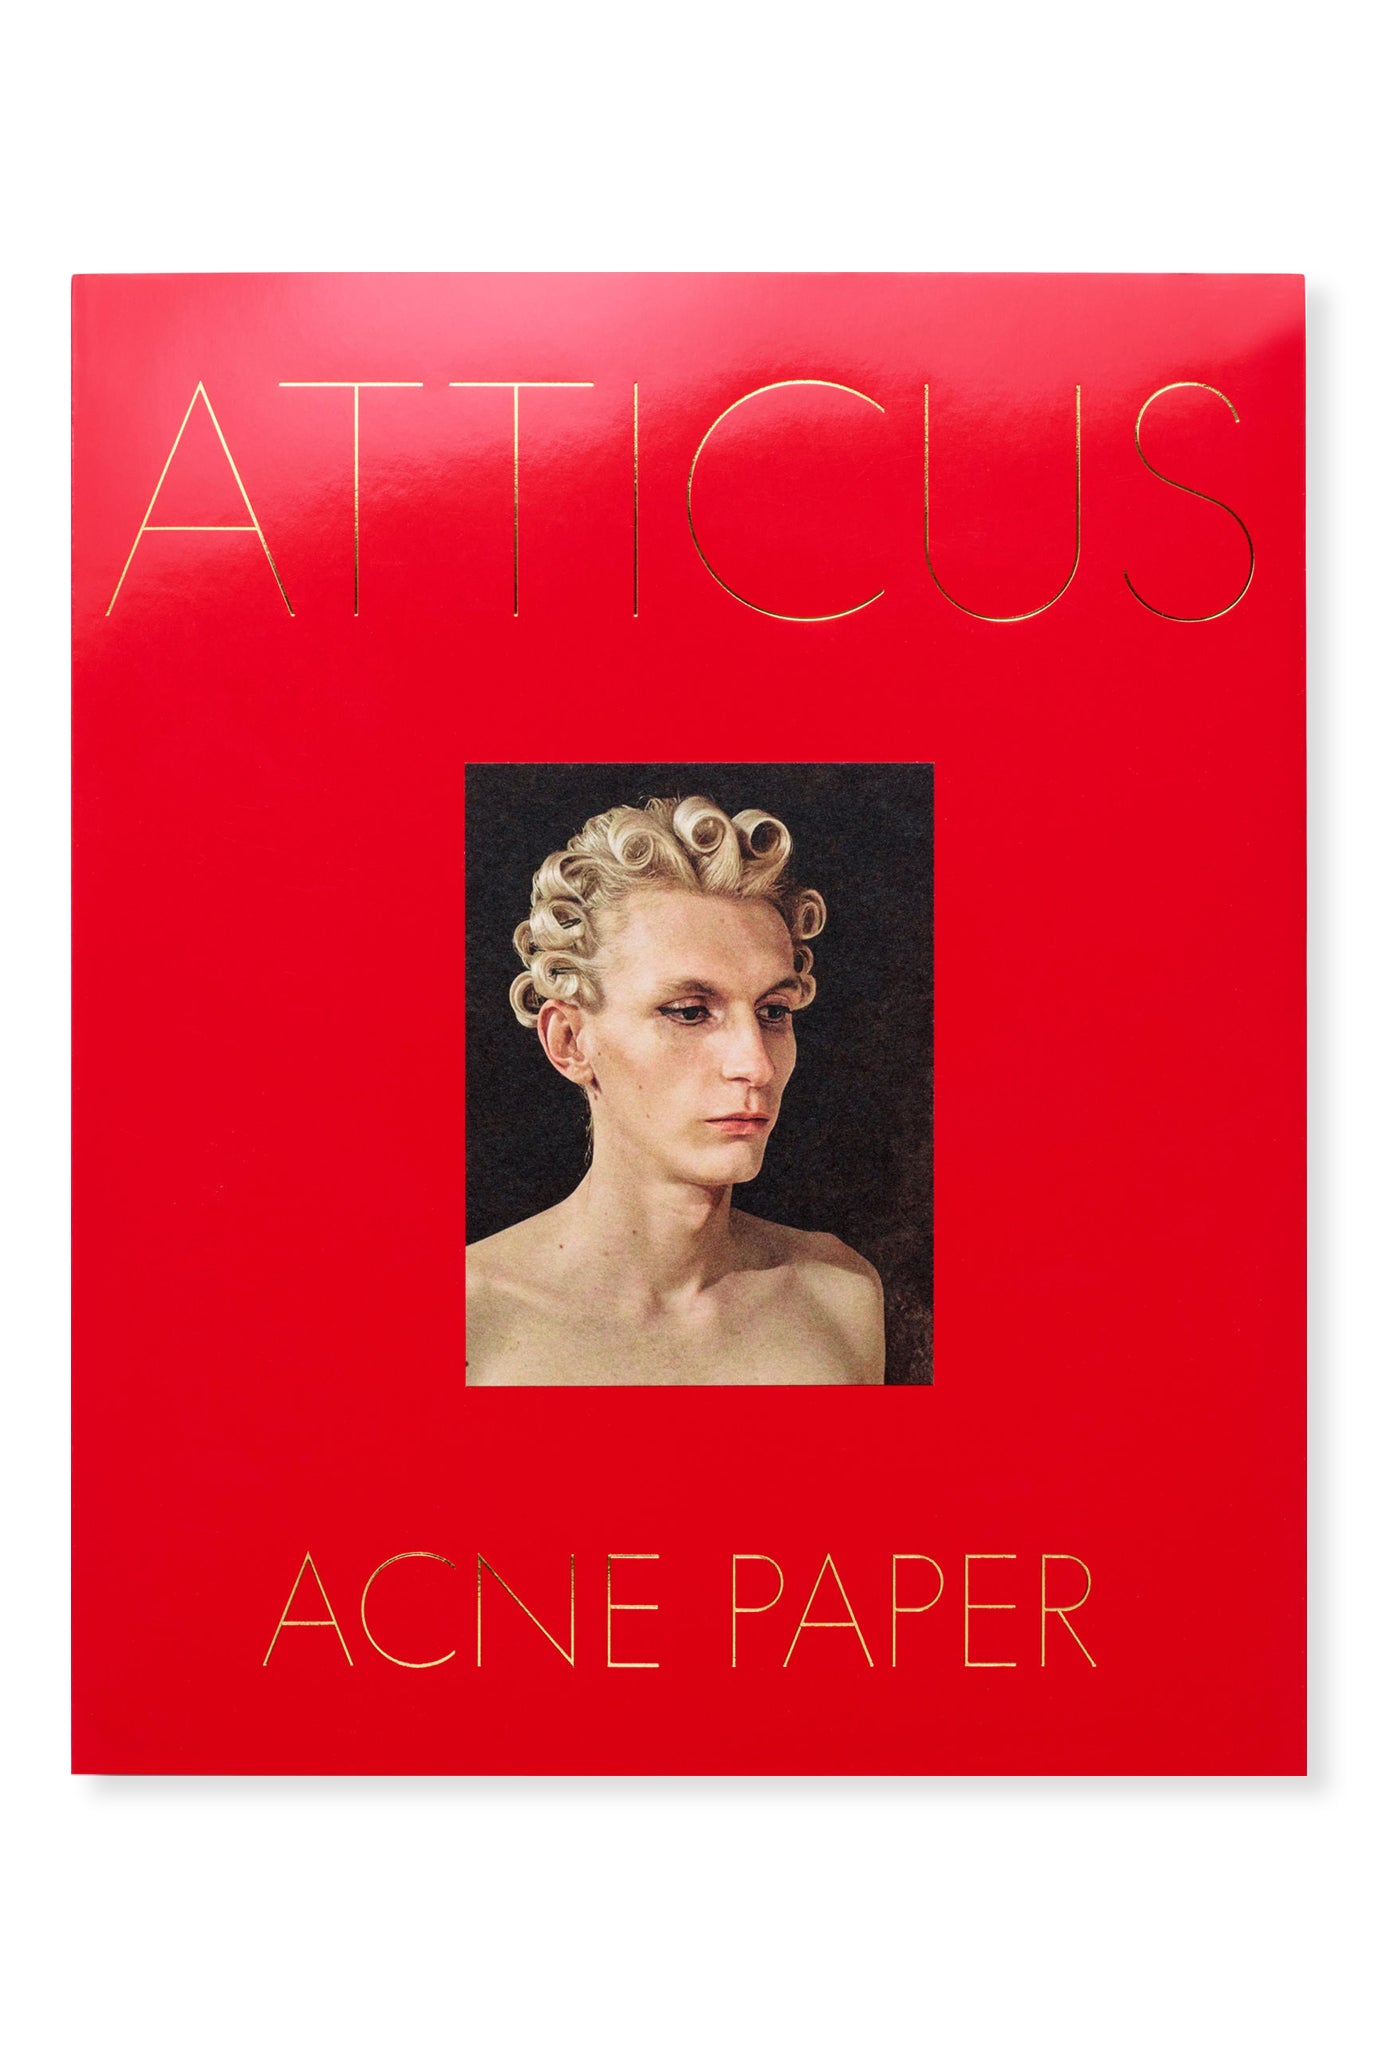 Acne Paper, Issue 17 - ATTICUS